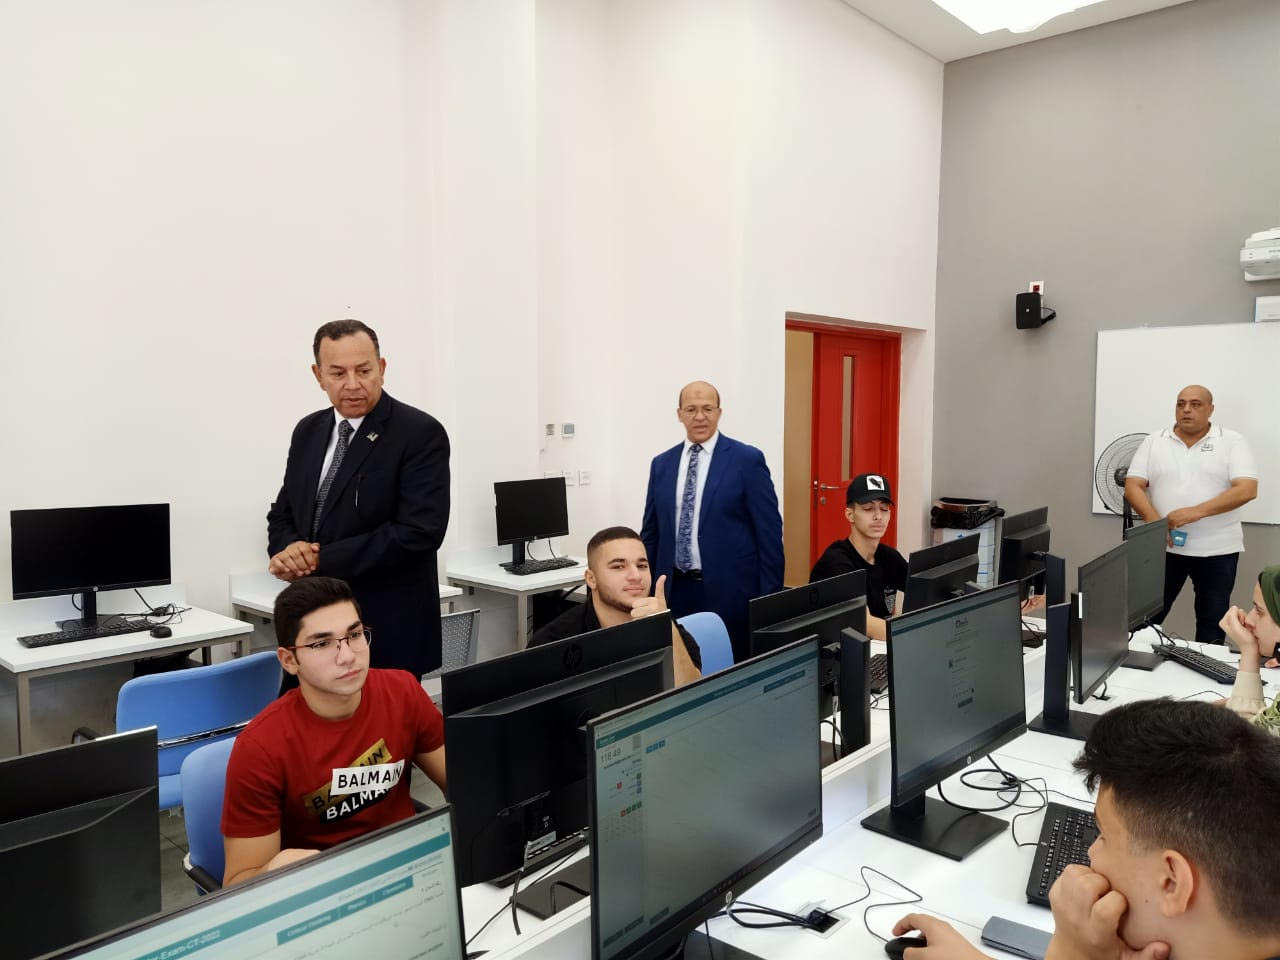 انطلاق اختبارات قبول الطلاب بالجامعات الأهلية بجامعة المنصورة الجديدة (7)